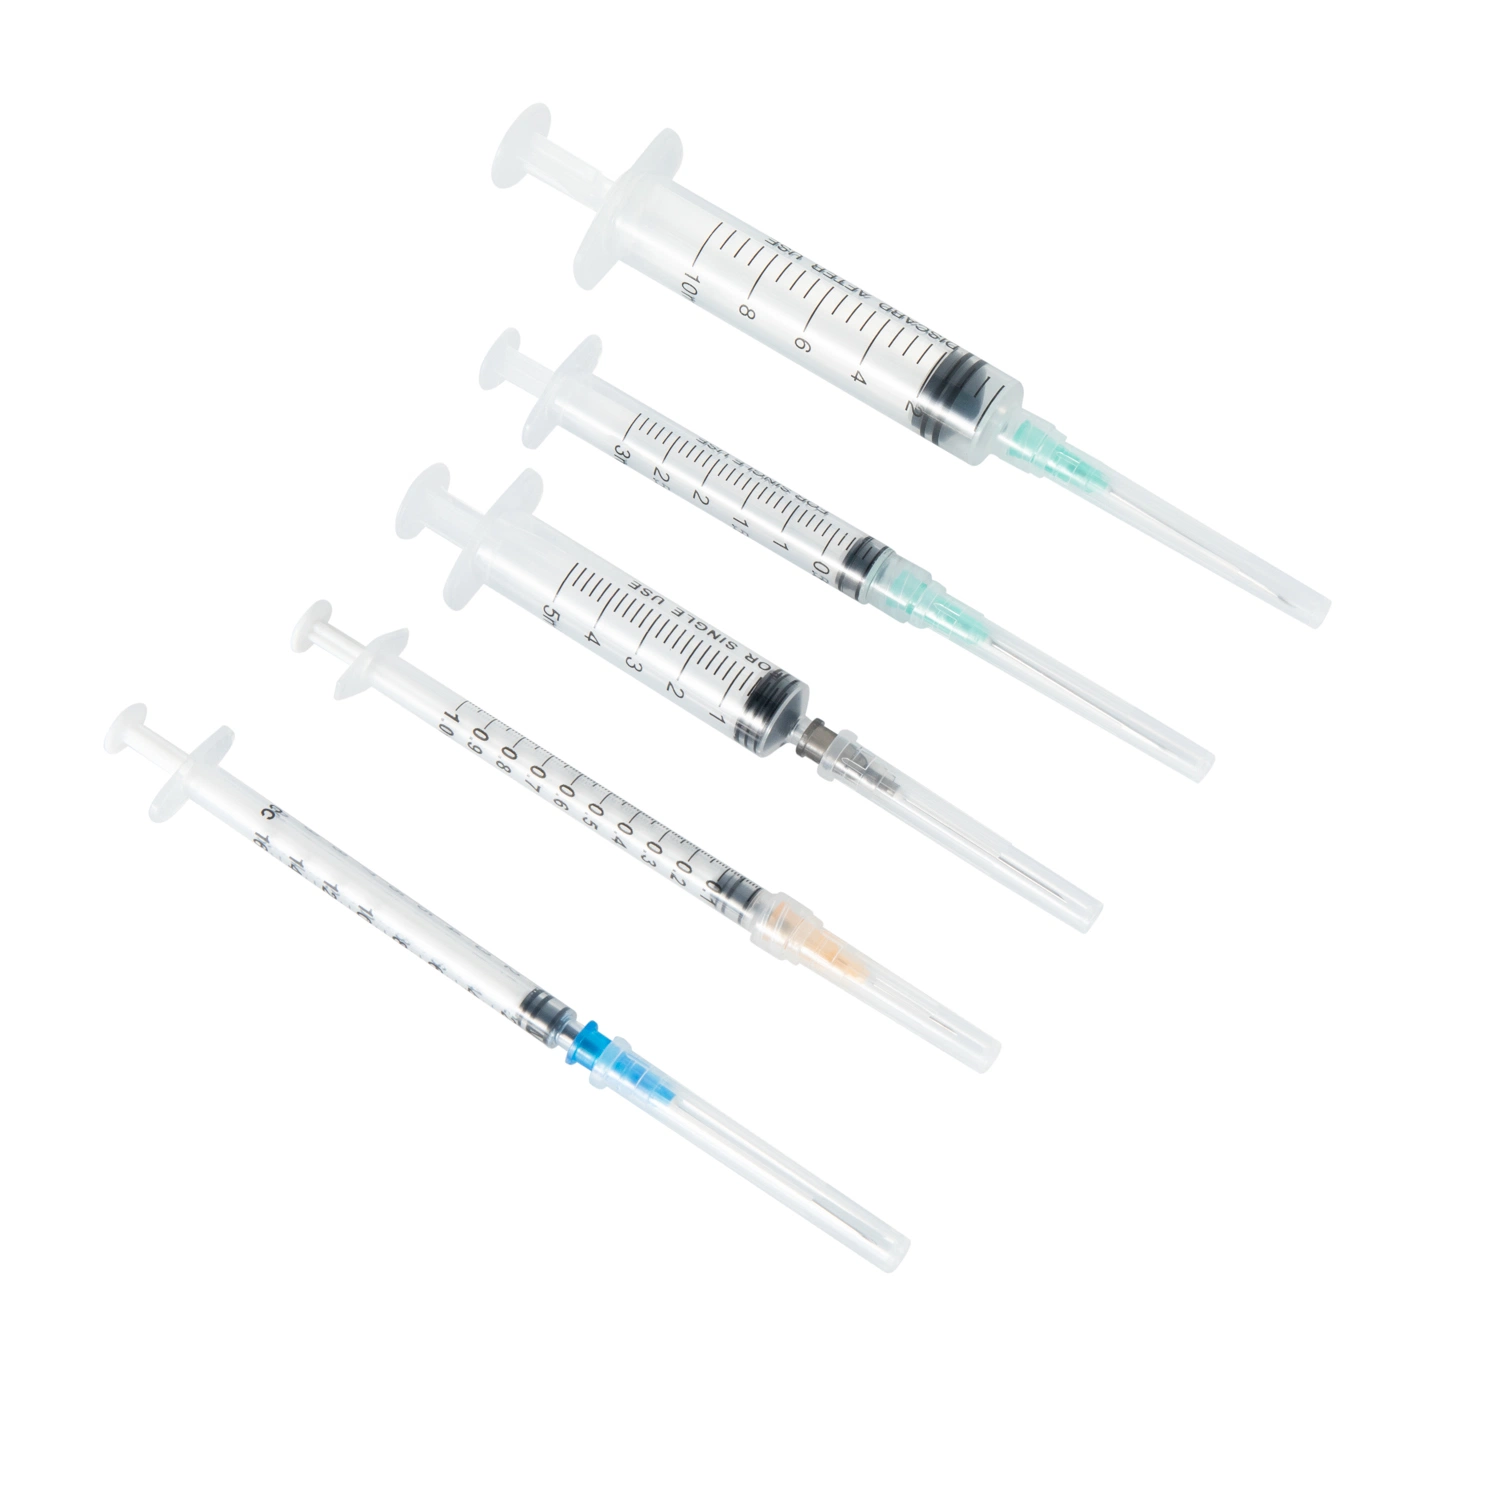 Для медицинского применения в стерильной больнице Eto используется наконечник Luer Lock без латекса 3-компонентный одноразовый шприц